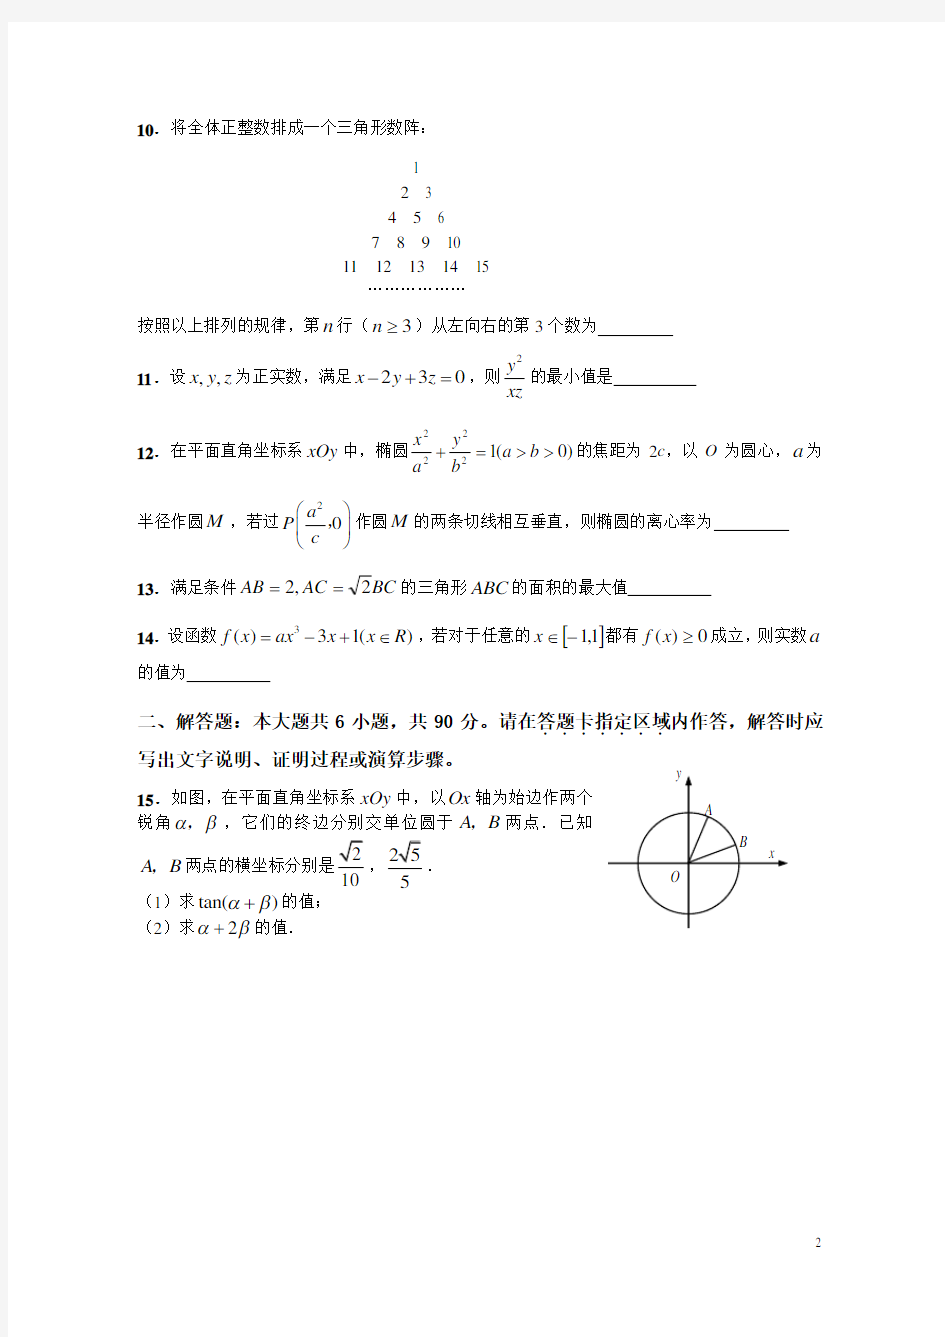 2008年高考试题理科数学(江苏卷)及答案解析